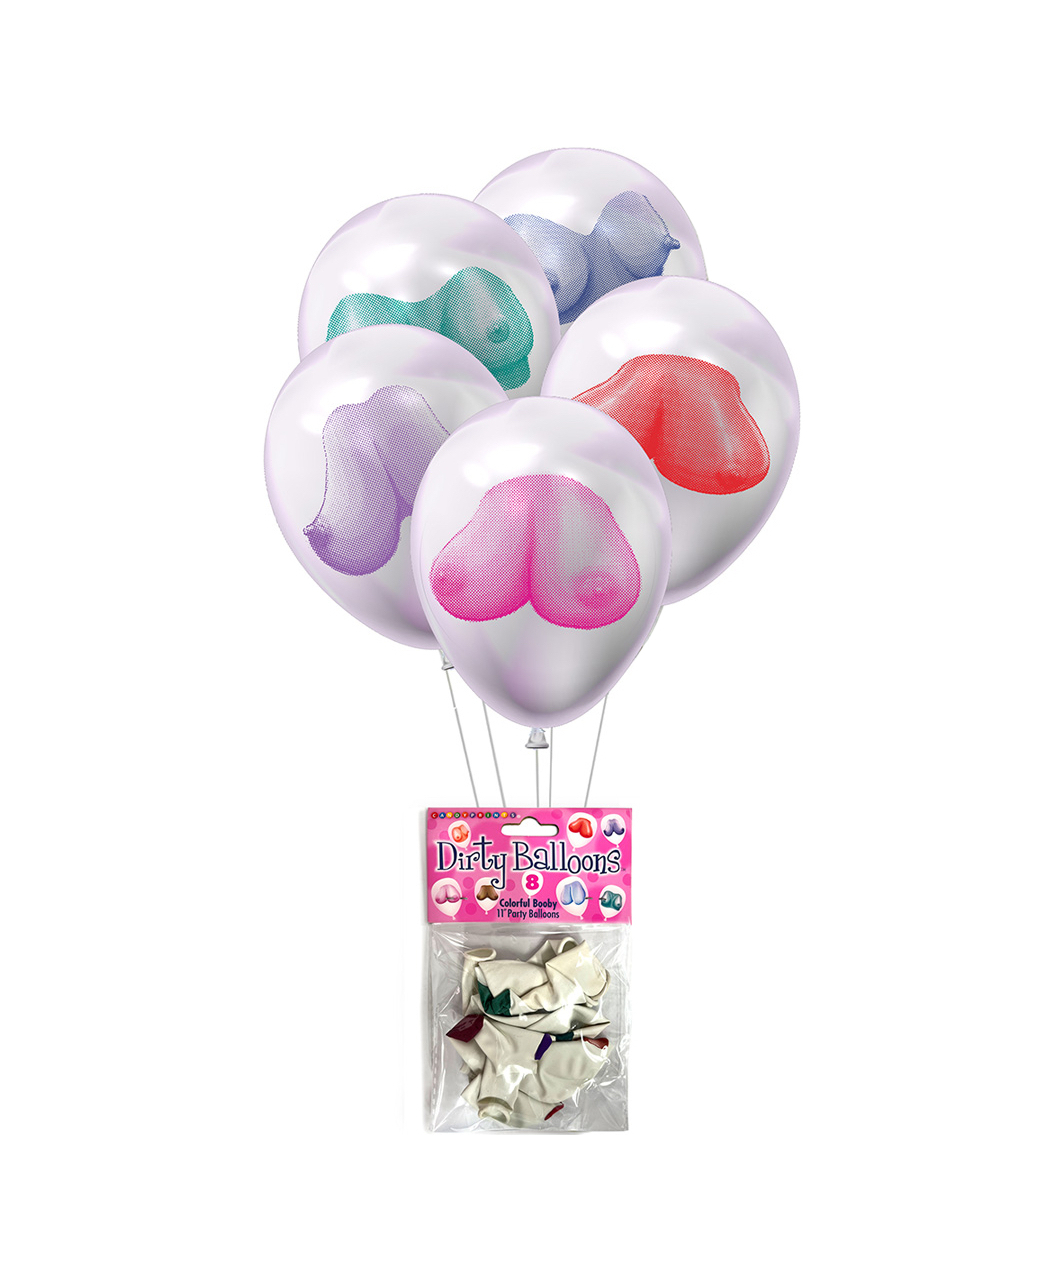 Little Genie Dirty Balloons Booby guminiai balionai (8 vnt.)